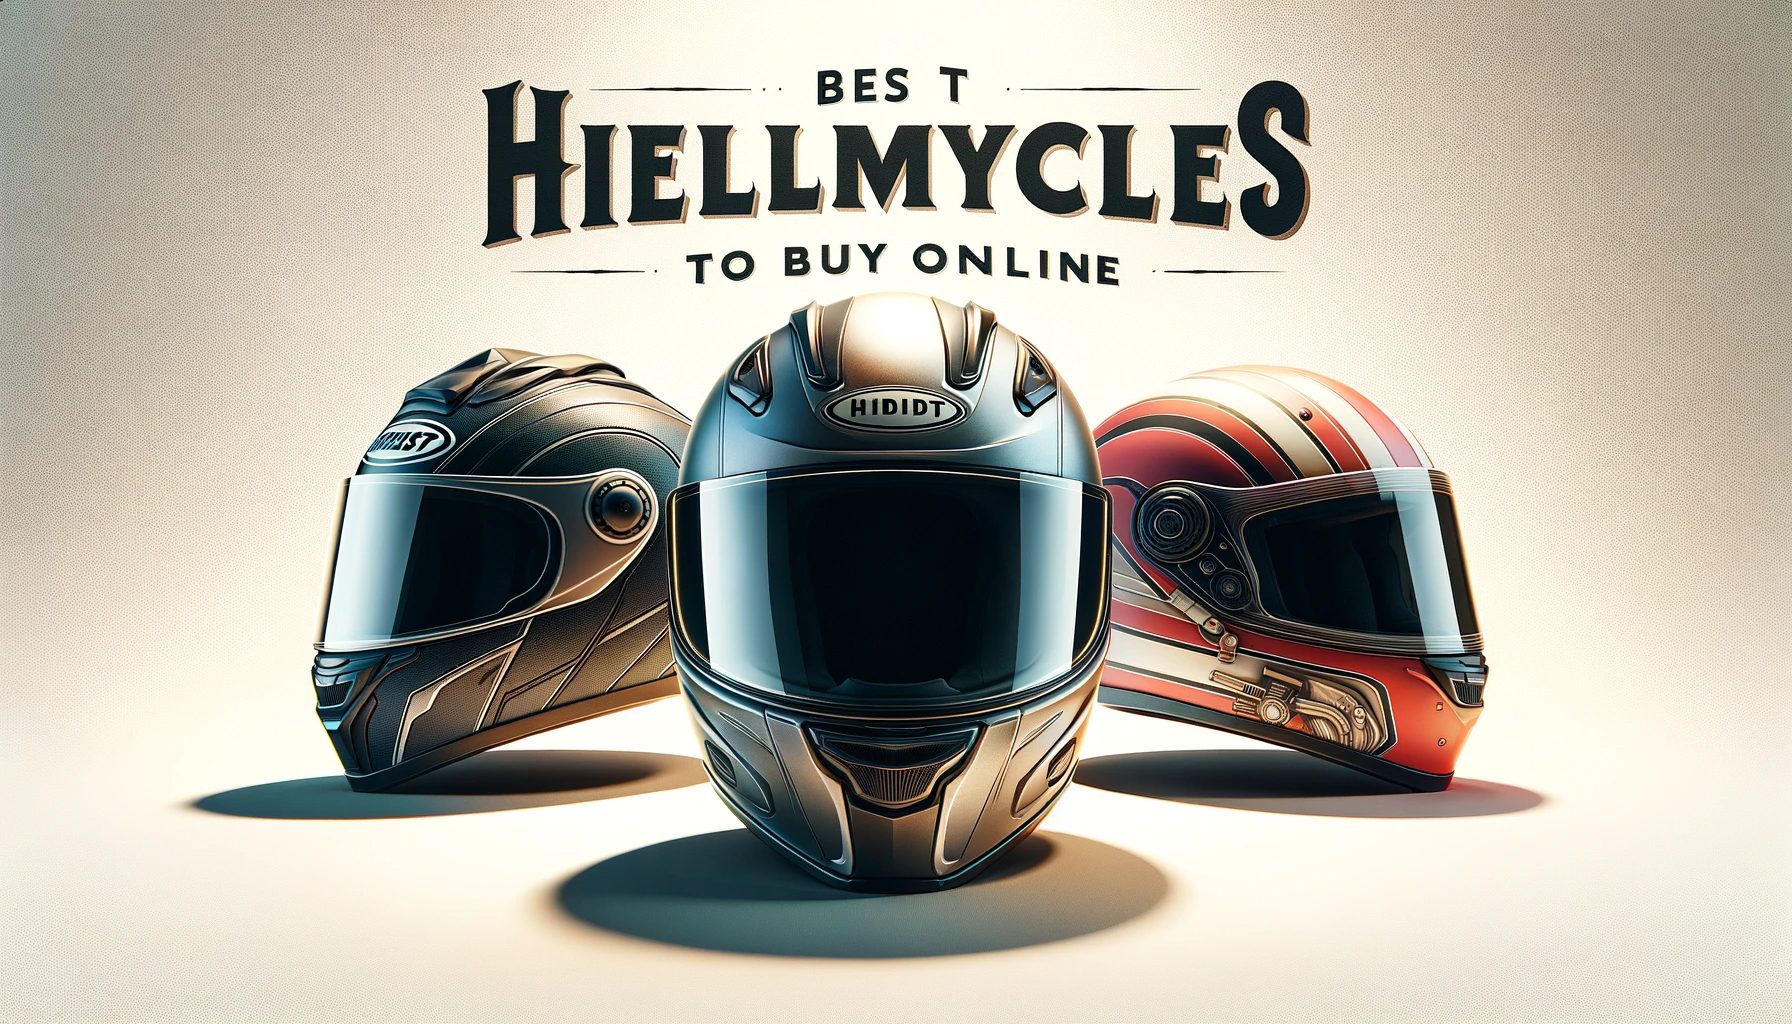 What is the best motorcycle helmet to buy online